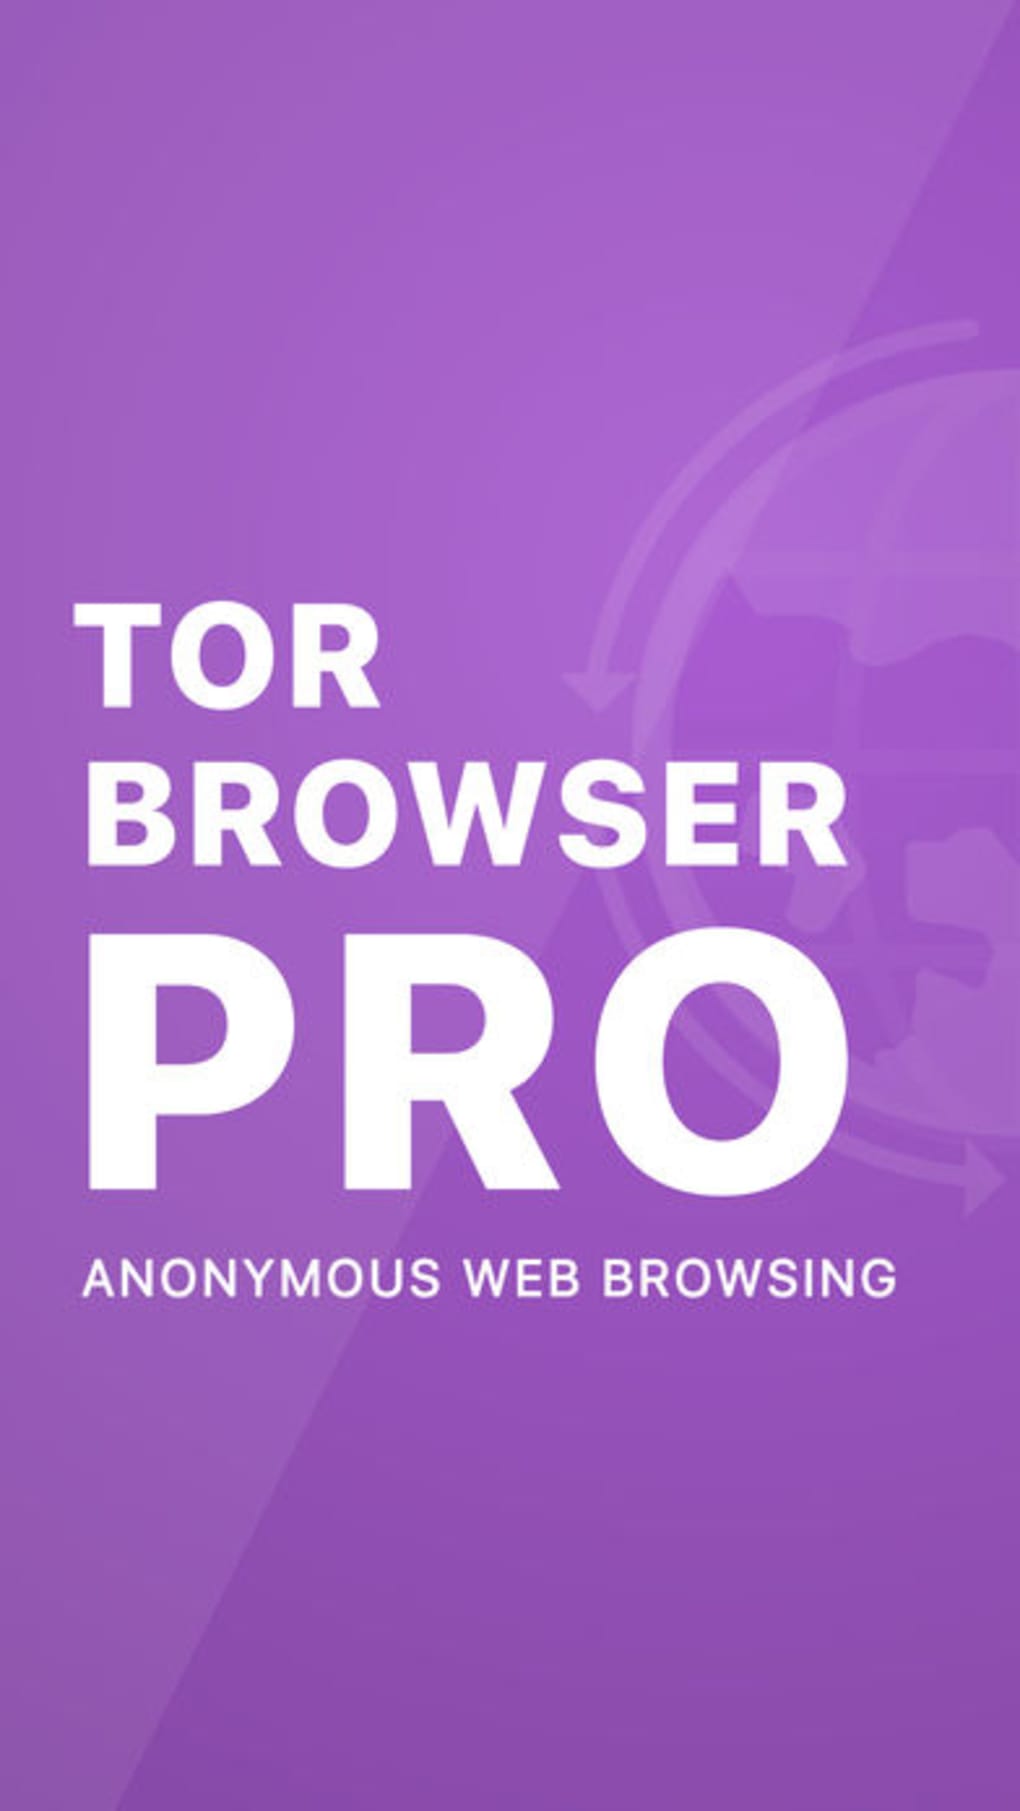 скачать tor browser ios скачать бесплатно mega